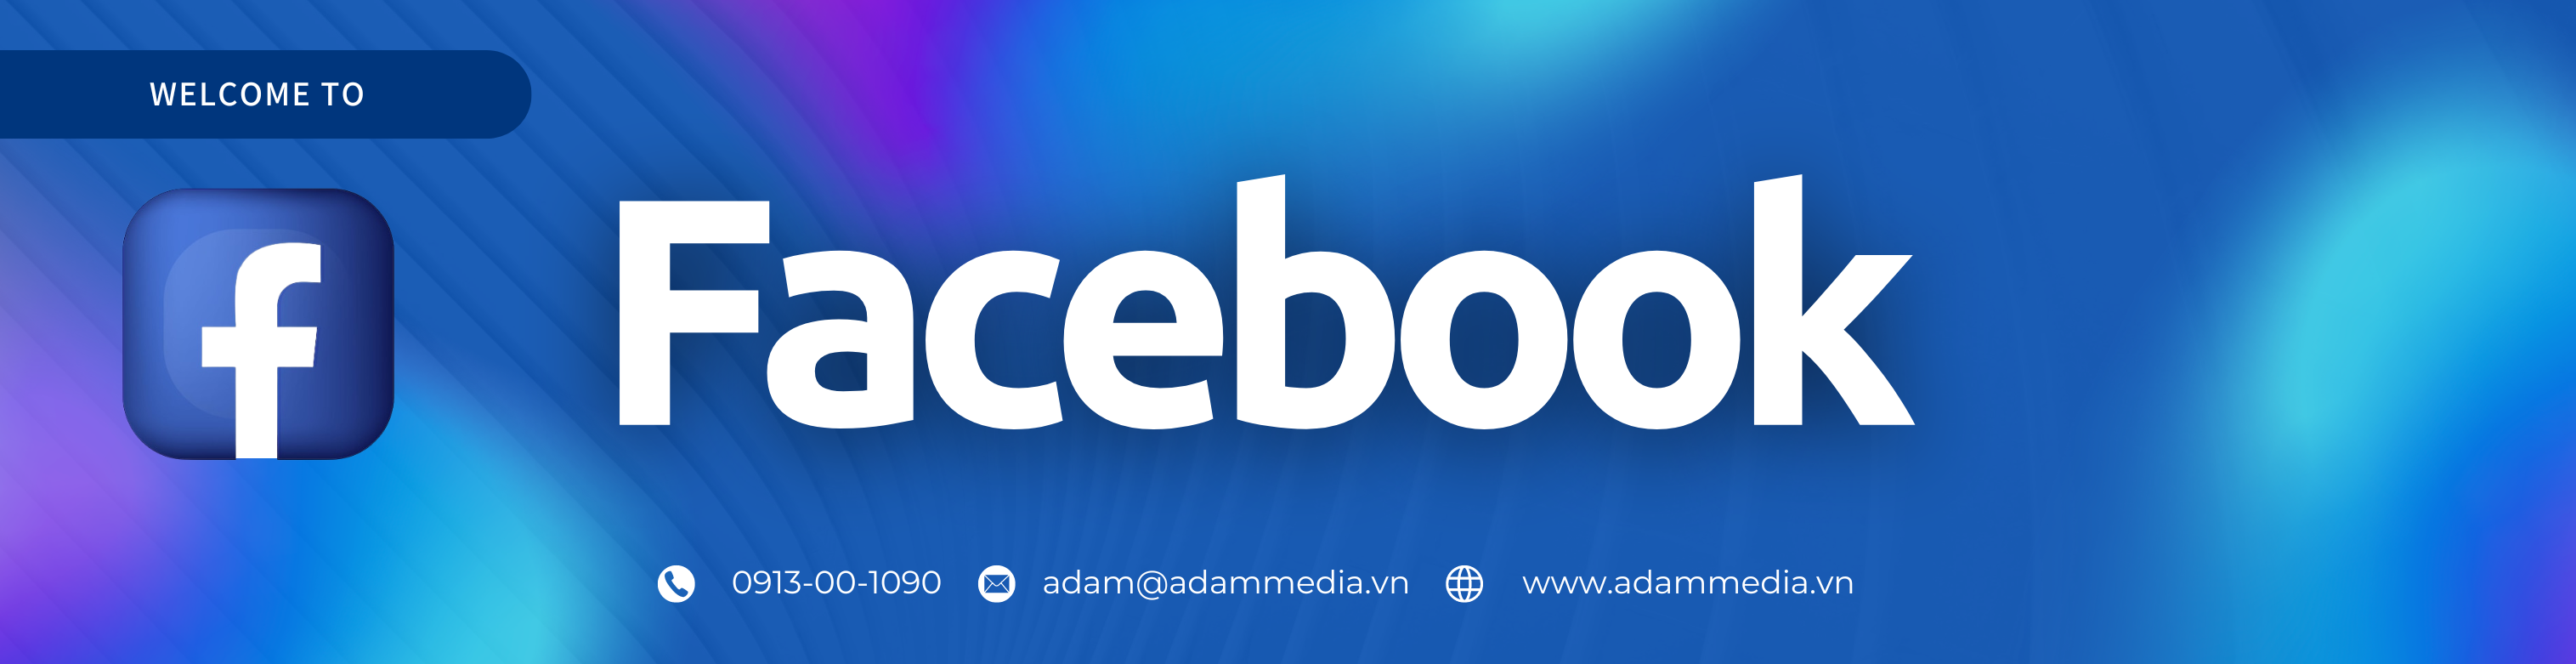 Facebook adam media